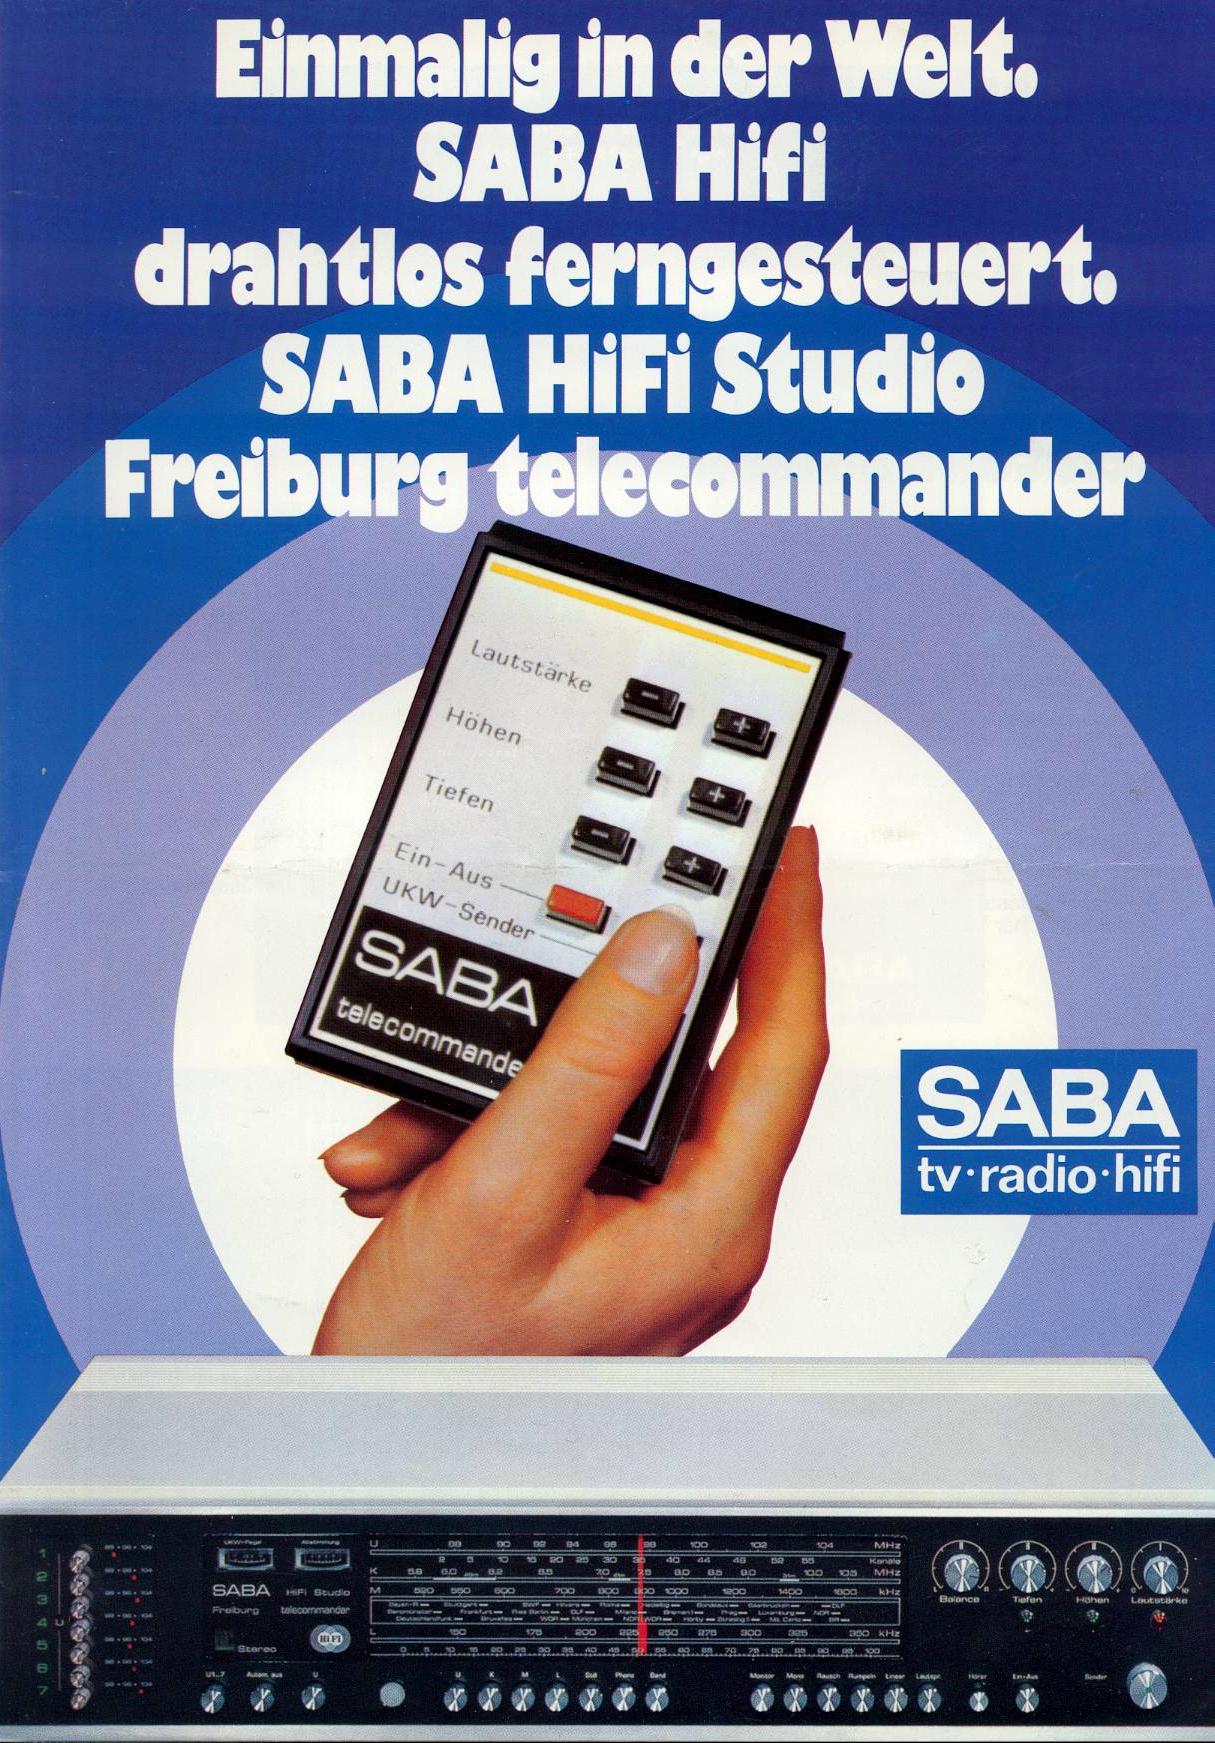 Saba Freiburg Telecommander-Prospekt-1.jpg